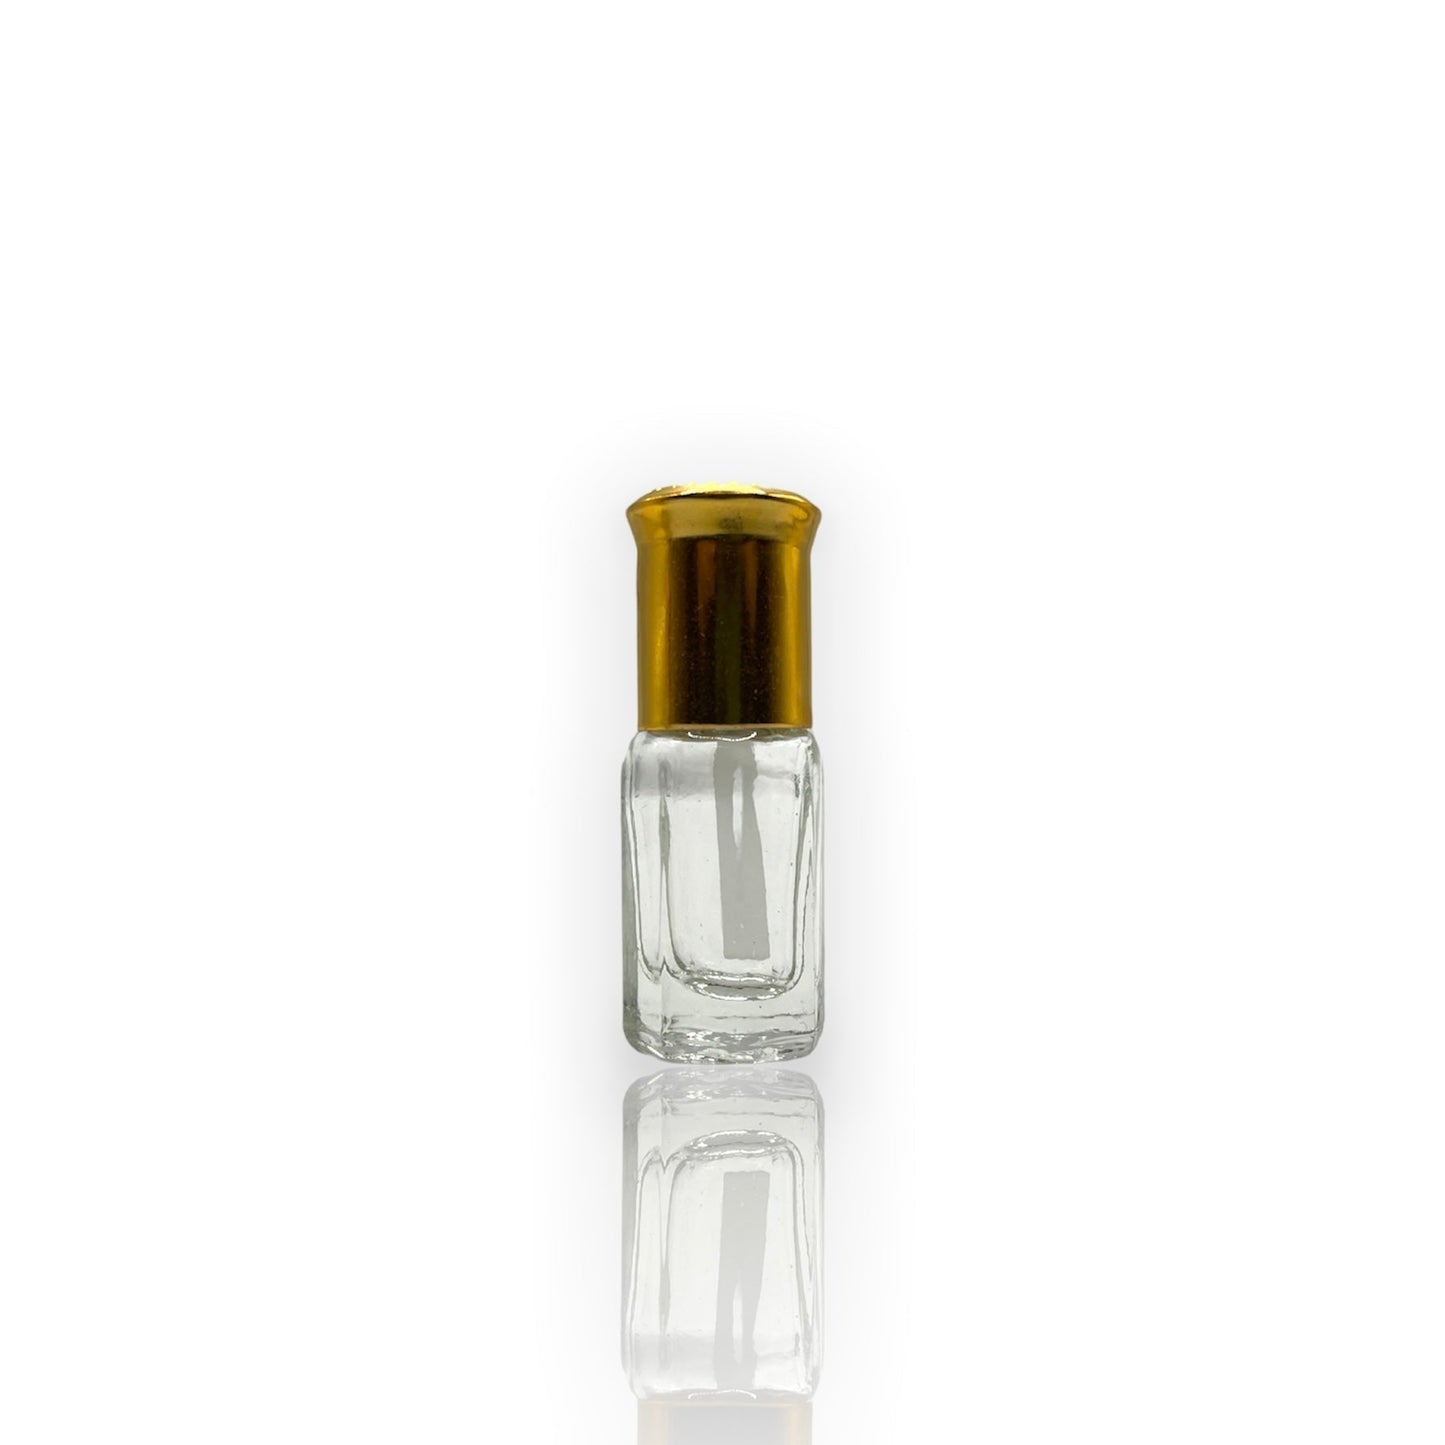 M-42 Öl Parfüm *Inspiriert Von HB. Oud Safran